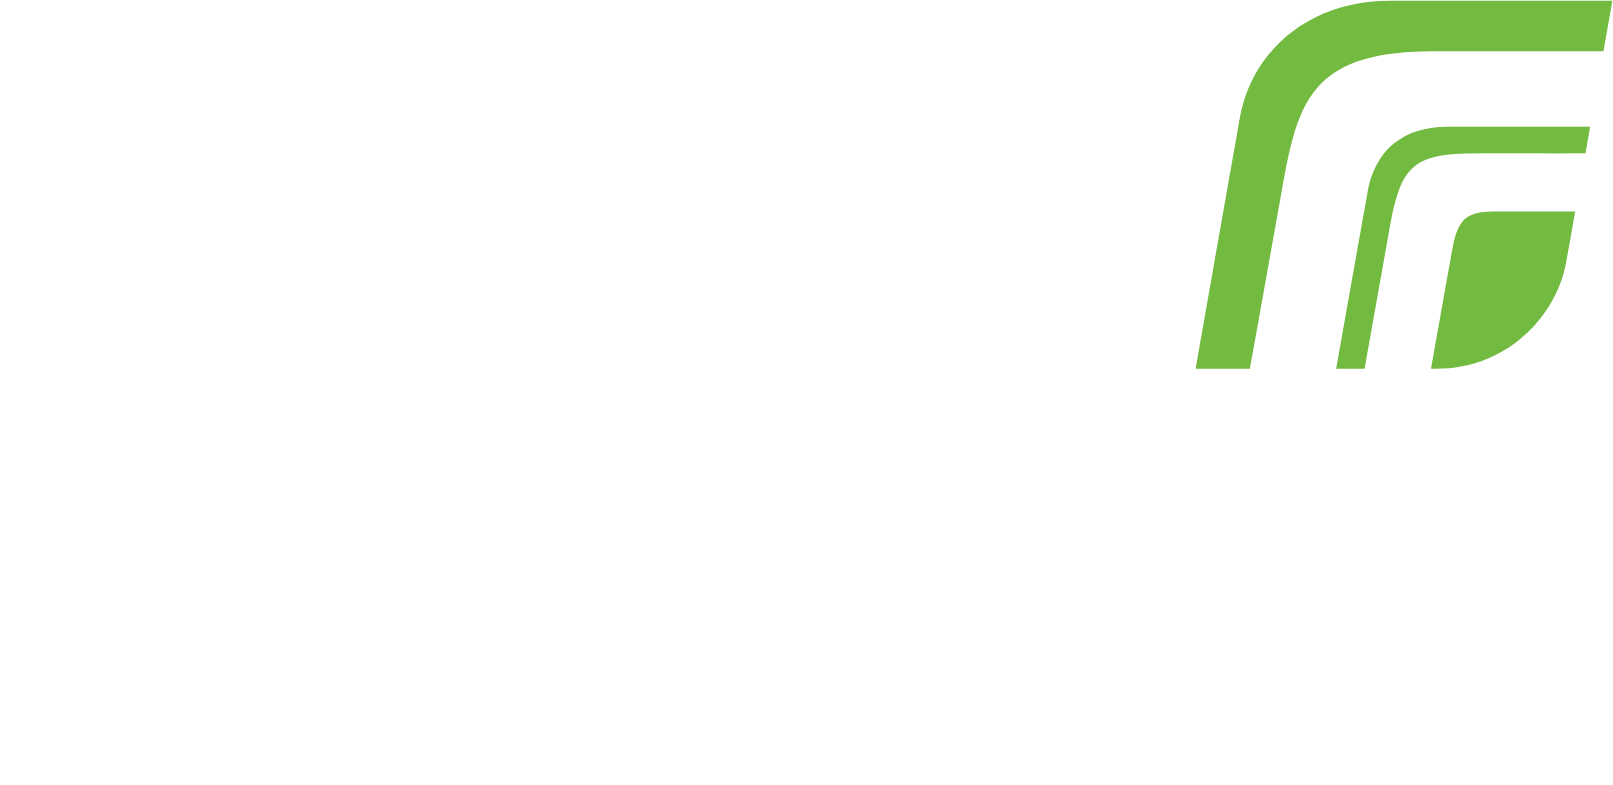 Regal Rexnord logo large for dark backgrounds (transparent PNG)